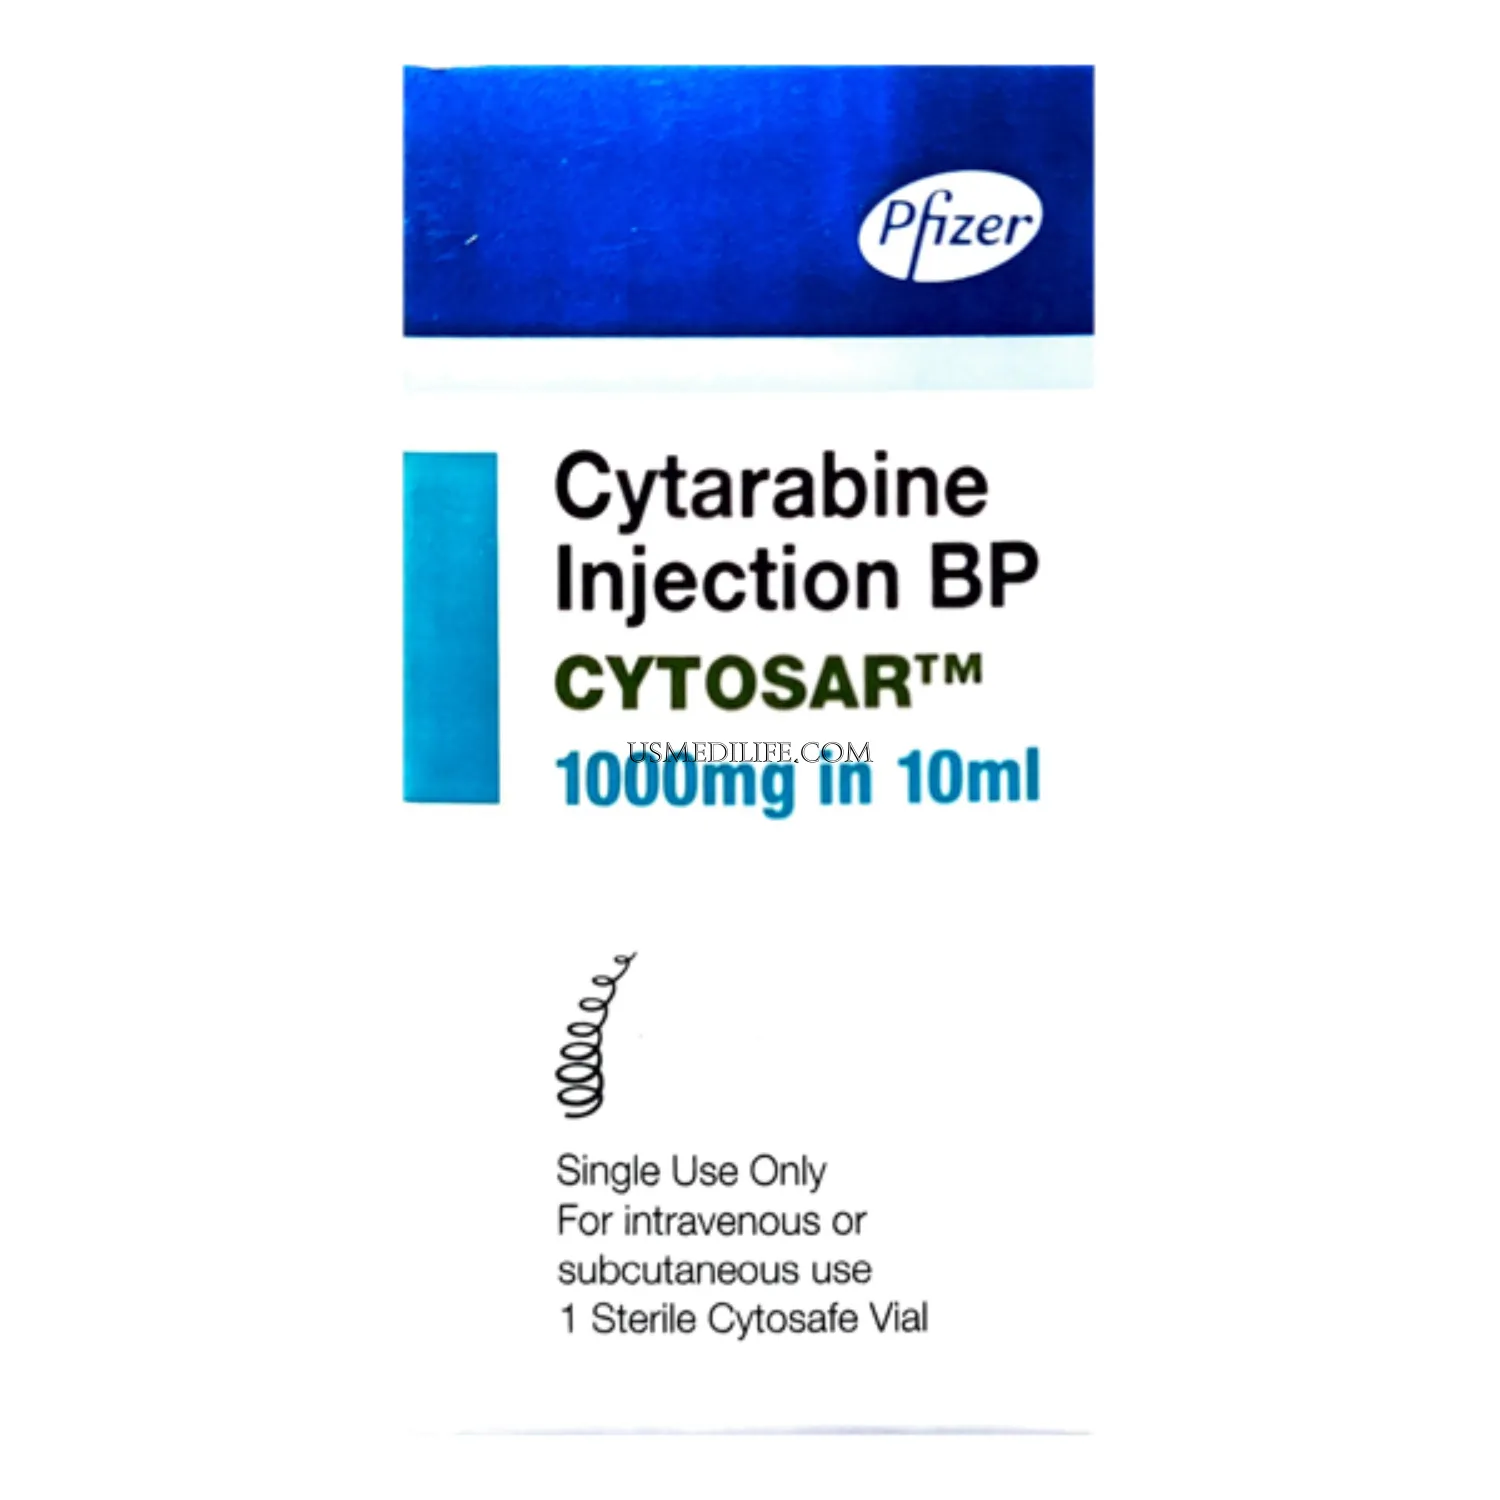 Cytosar 1000mg Injection 10ml image